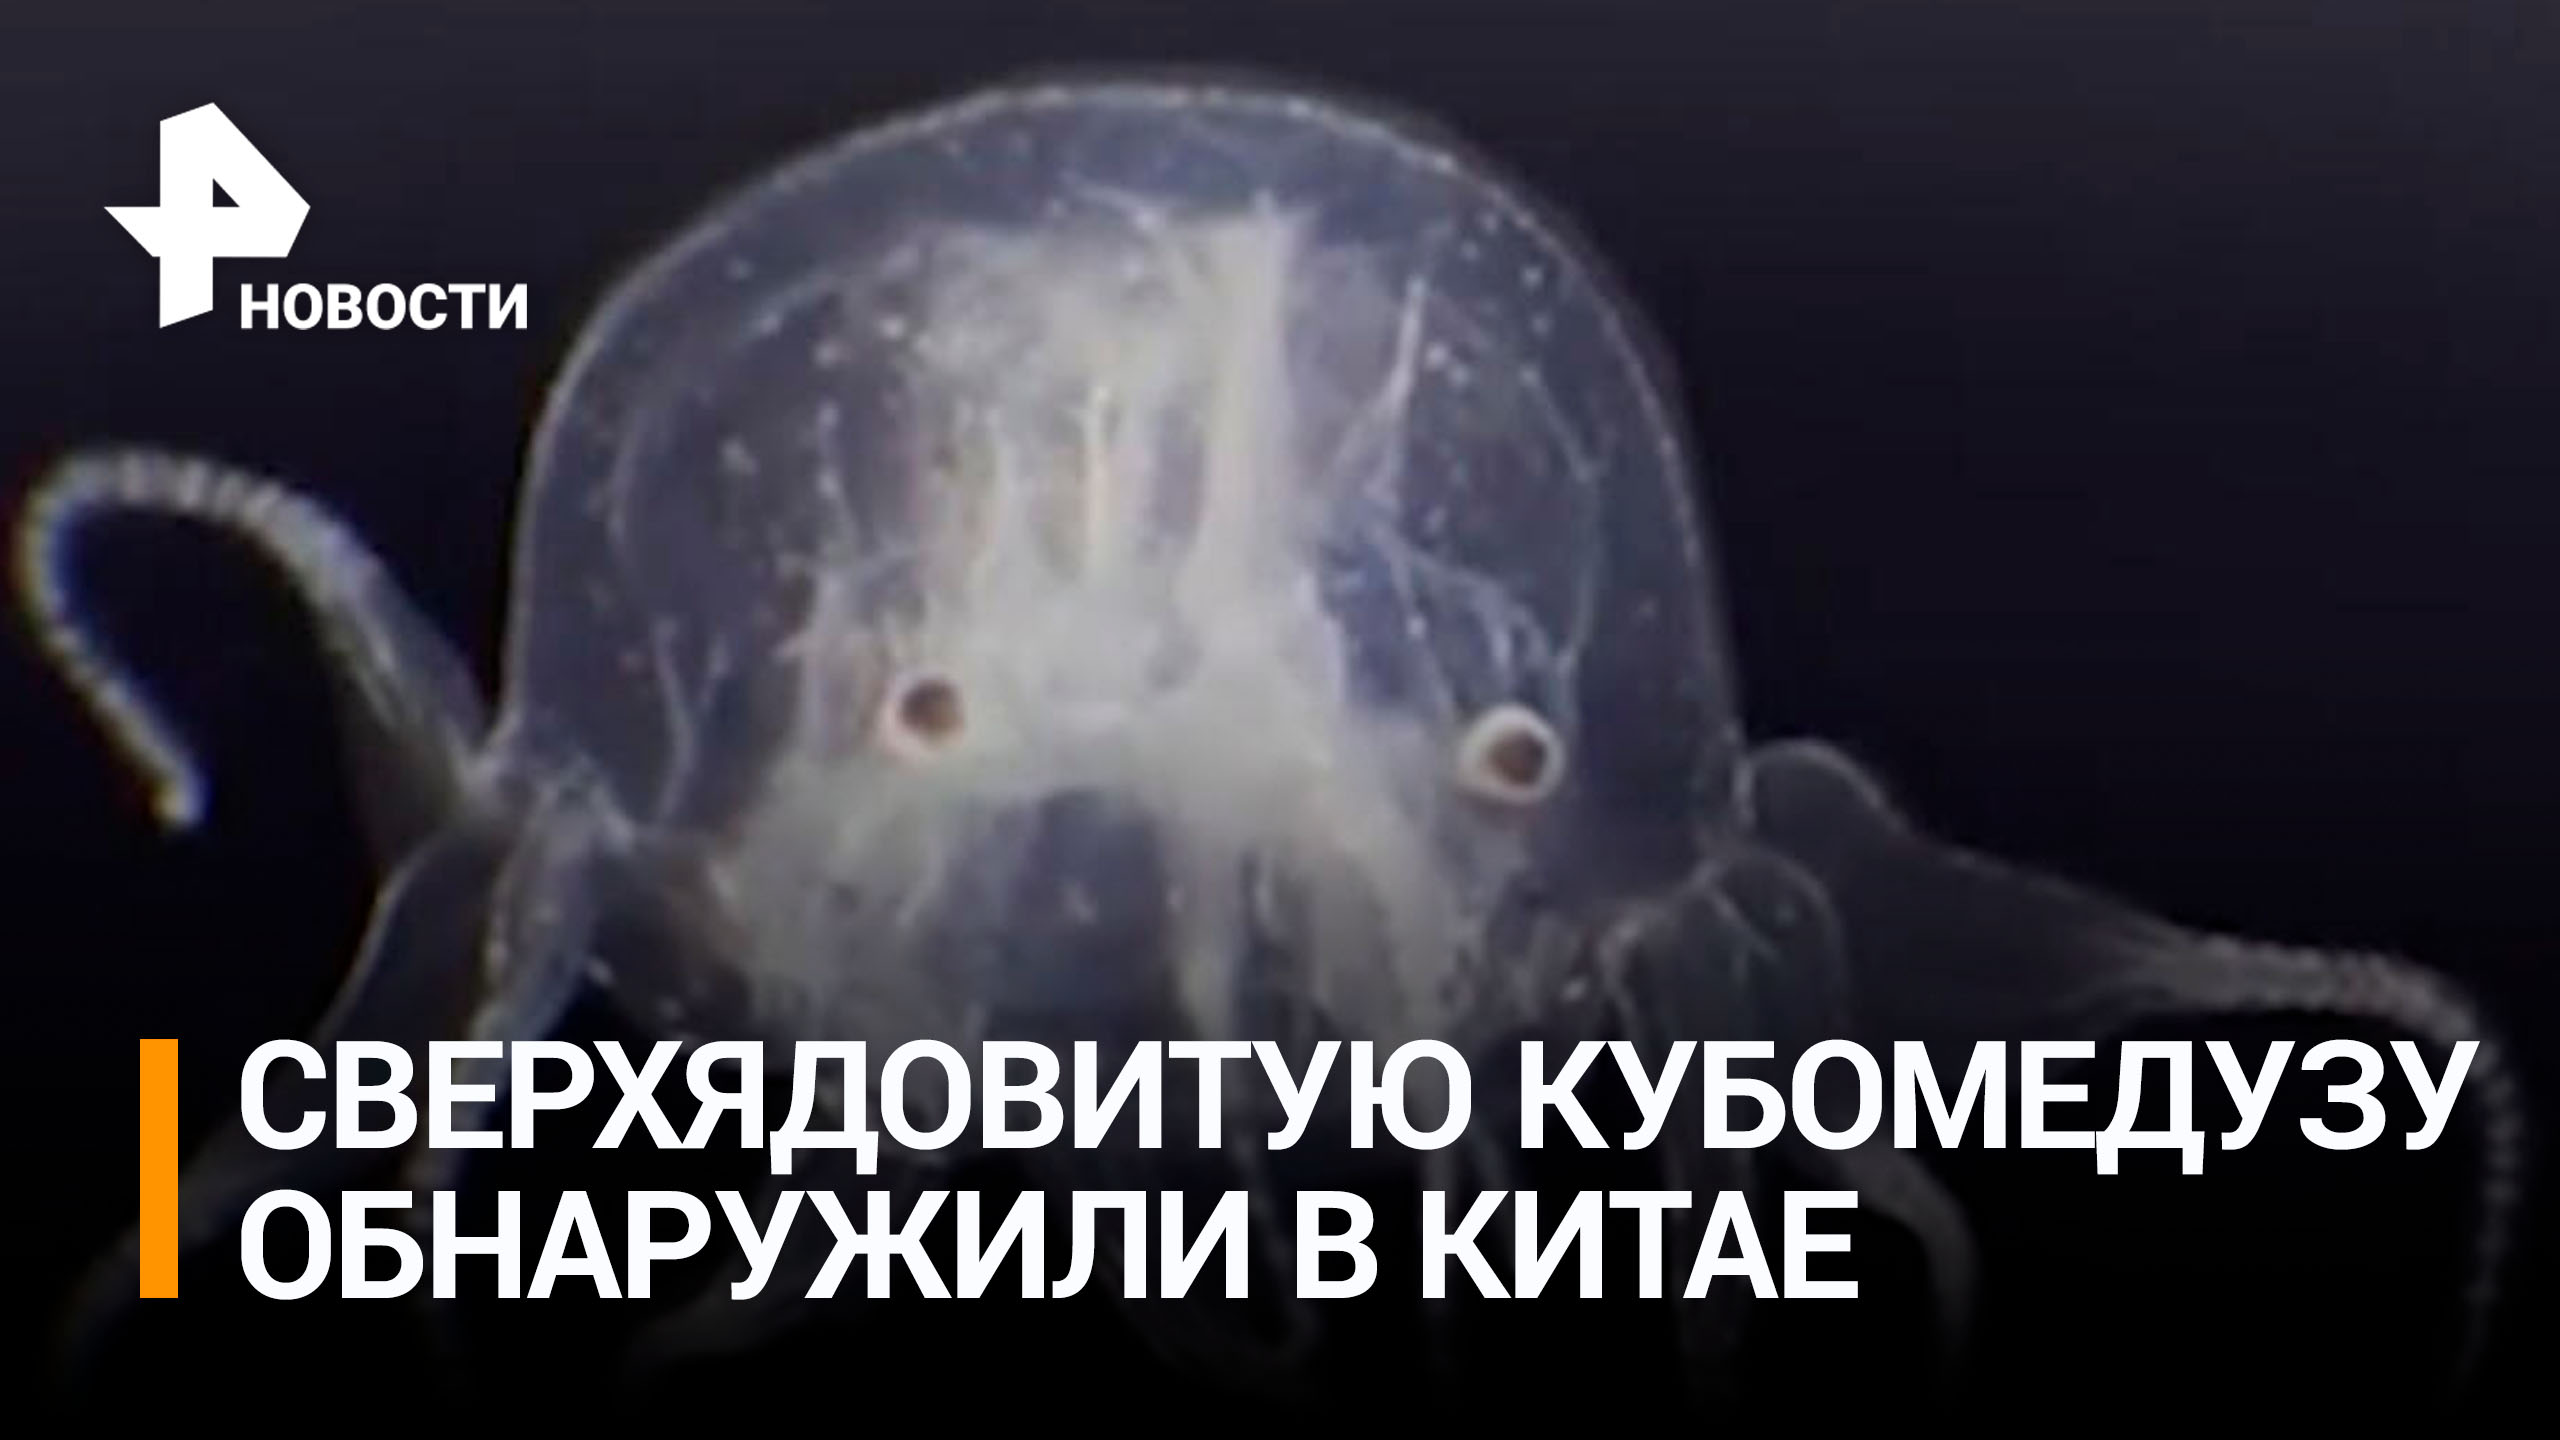 24 глаза и три щупальца: сверхъядовитую медузу, вызывающую паралич, обнаружили в Гонконге / РЕН